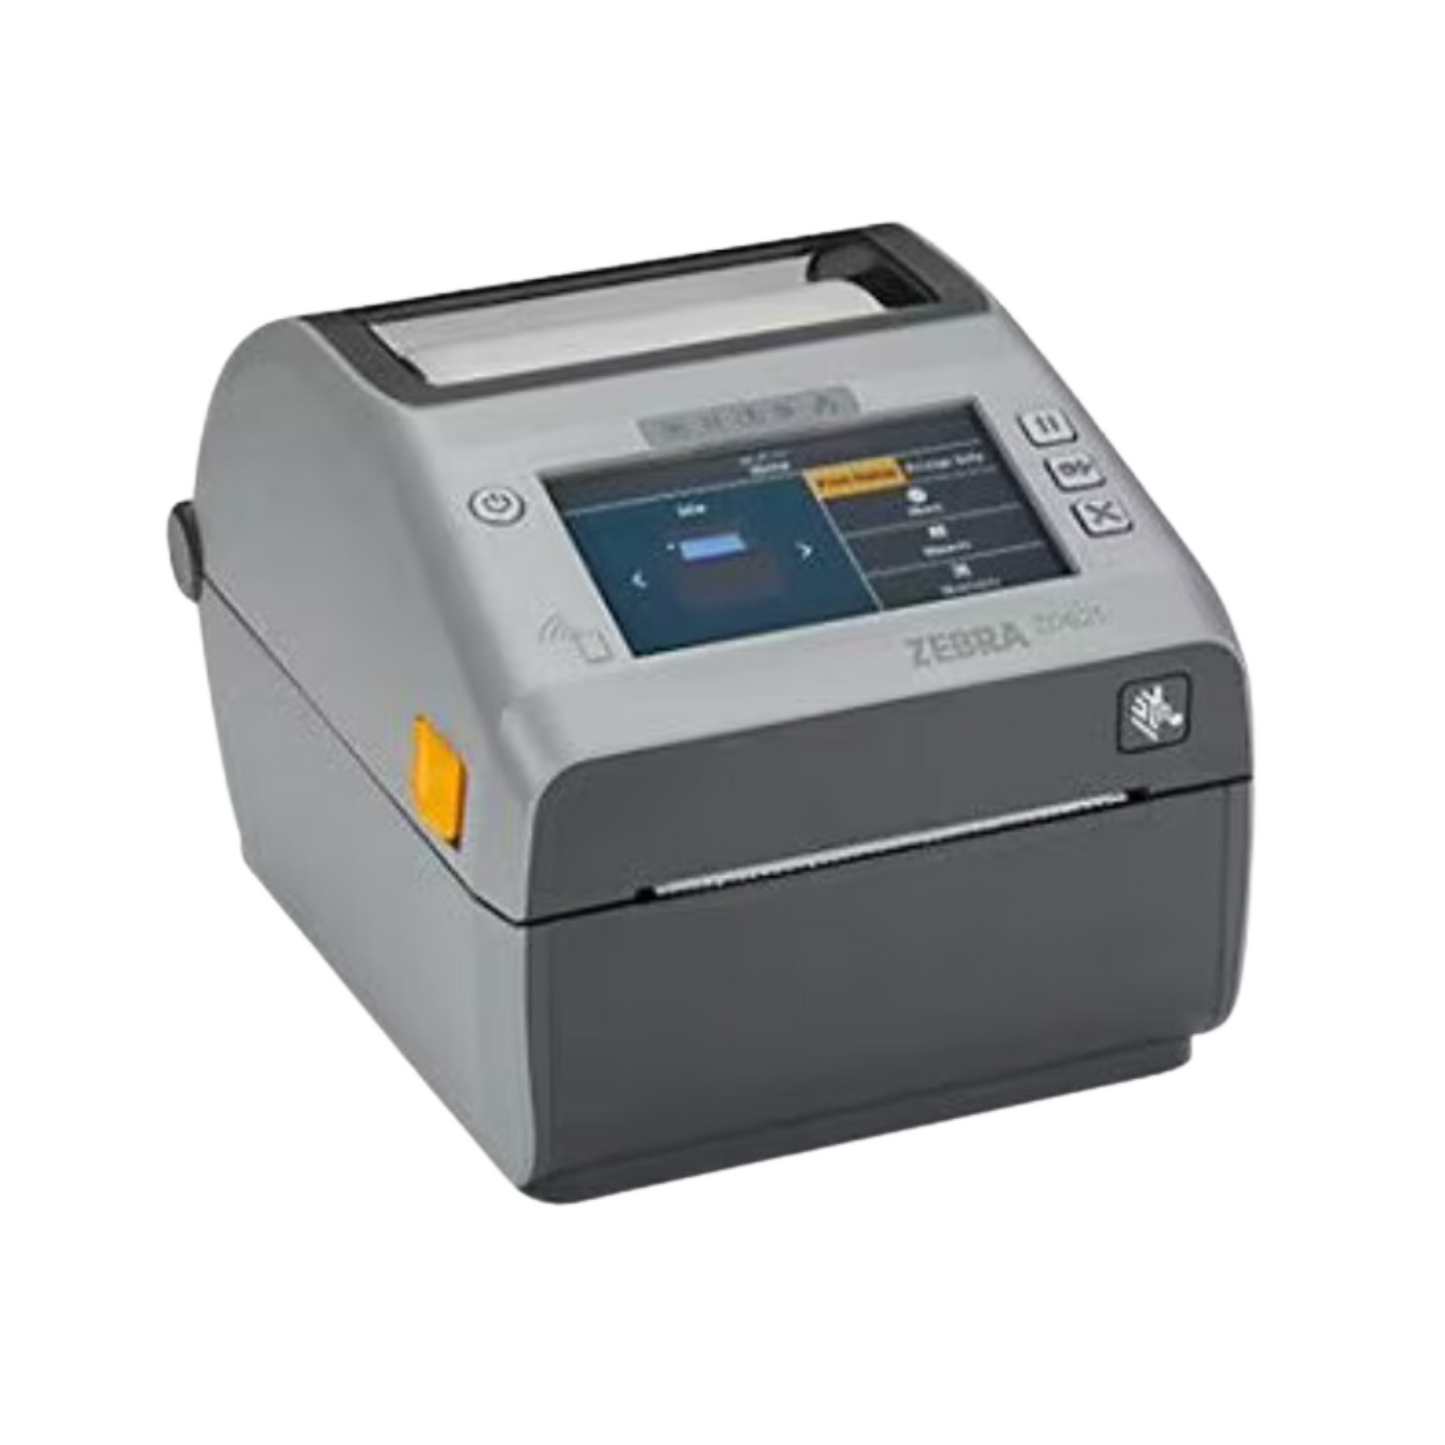 ZD621 Zebra Direct Thermal Label Printer